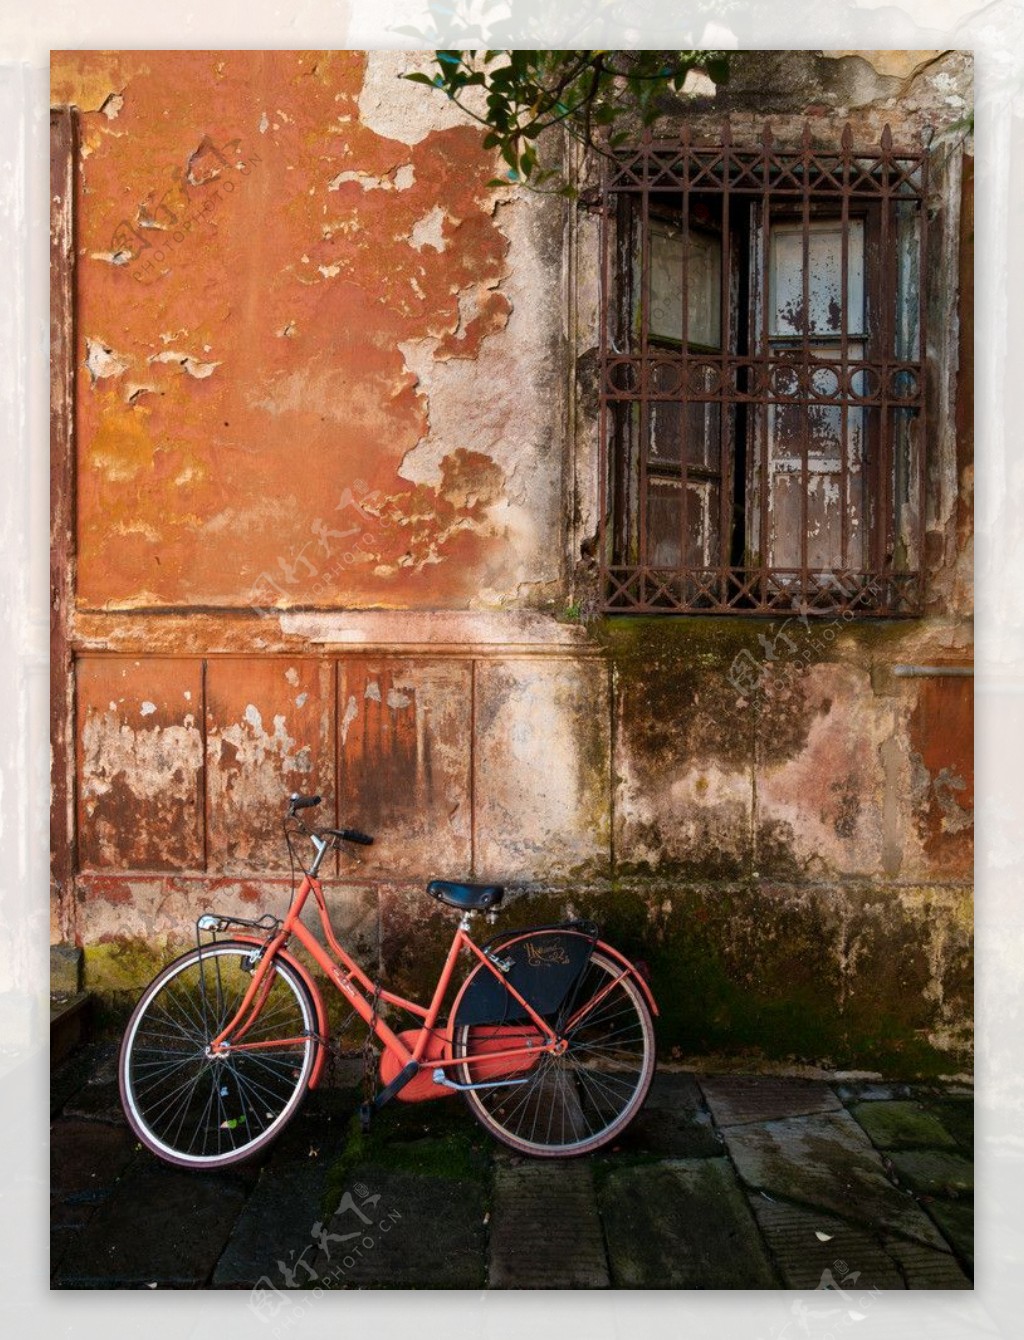 靠墙的脚踏车图片